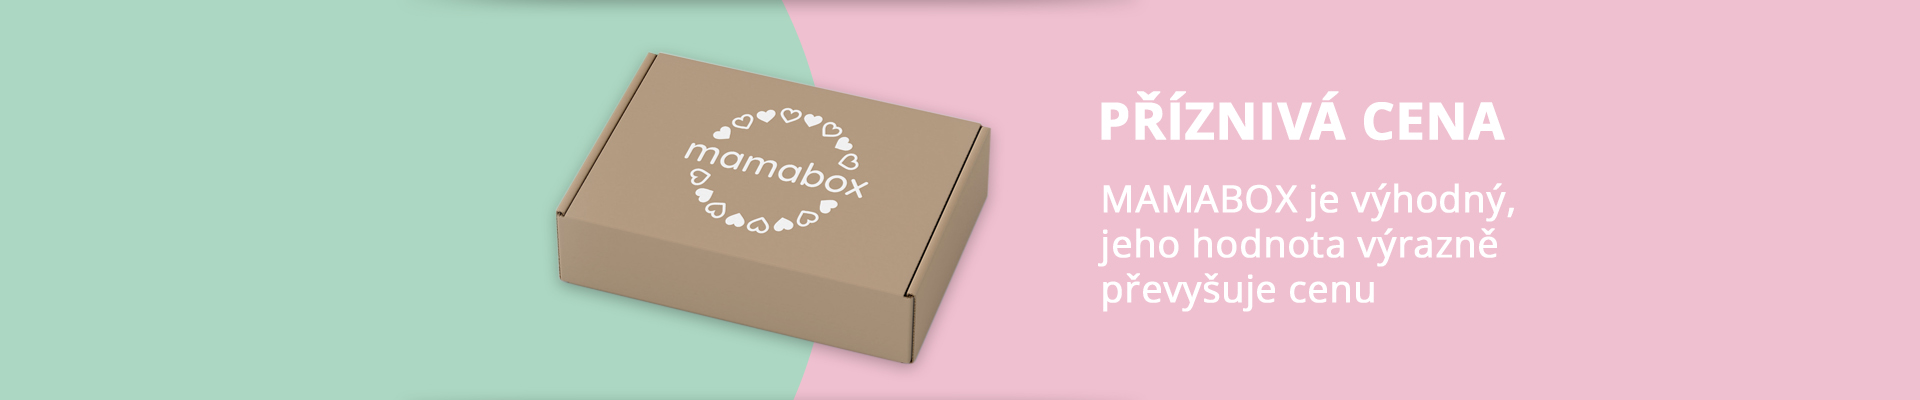 Mamabox - příznivá cena